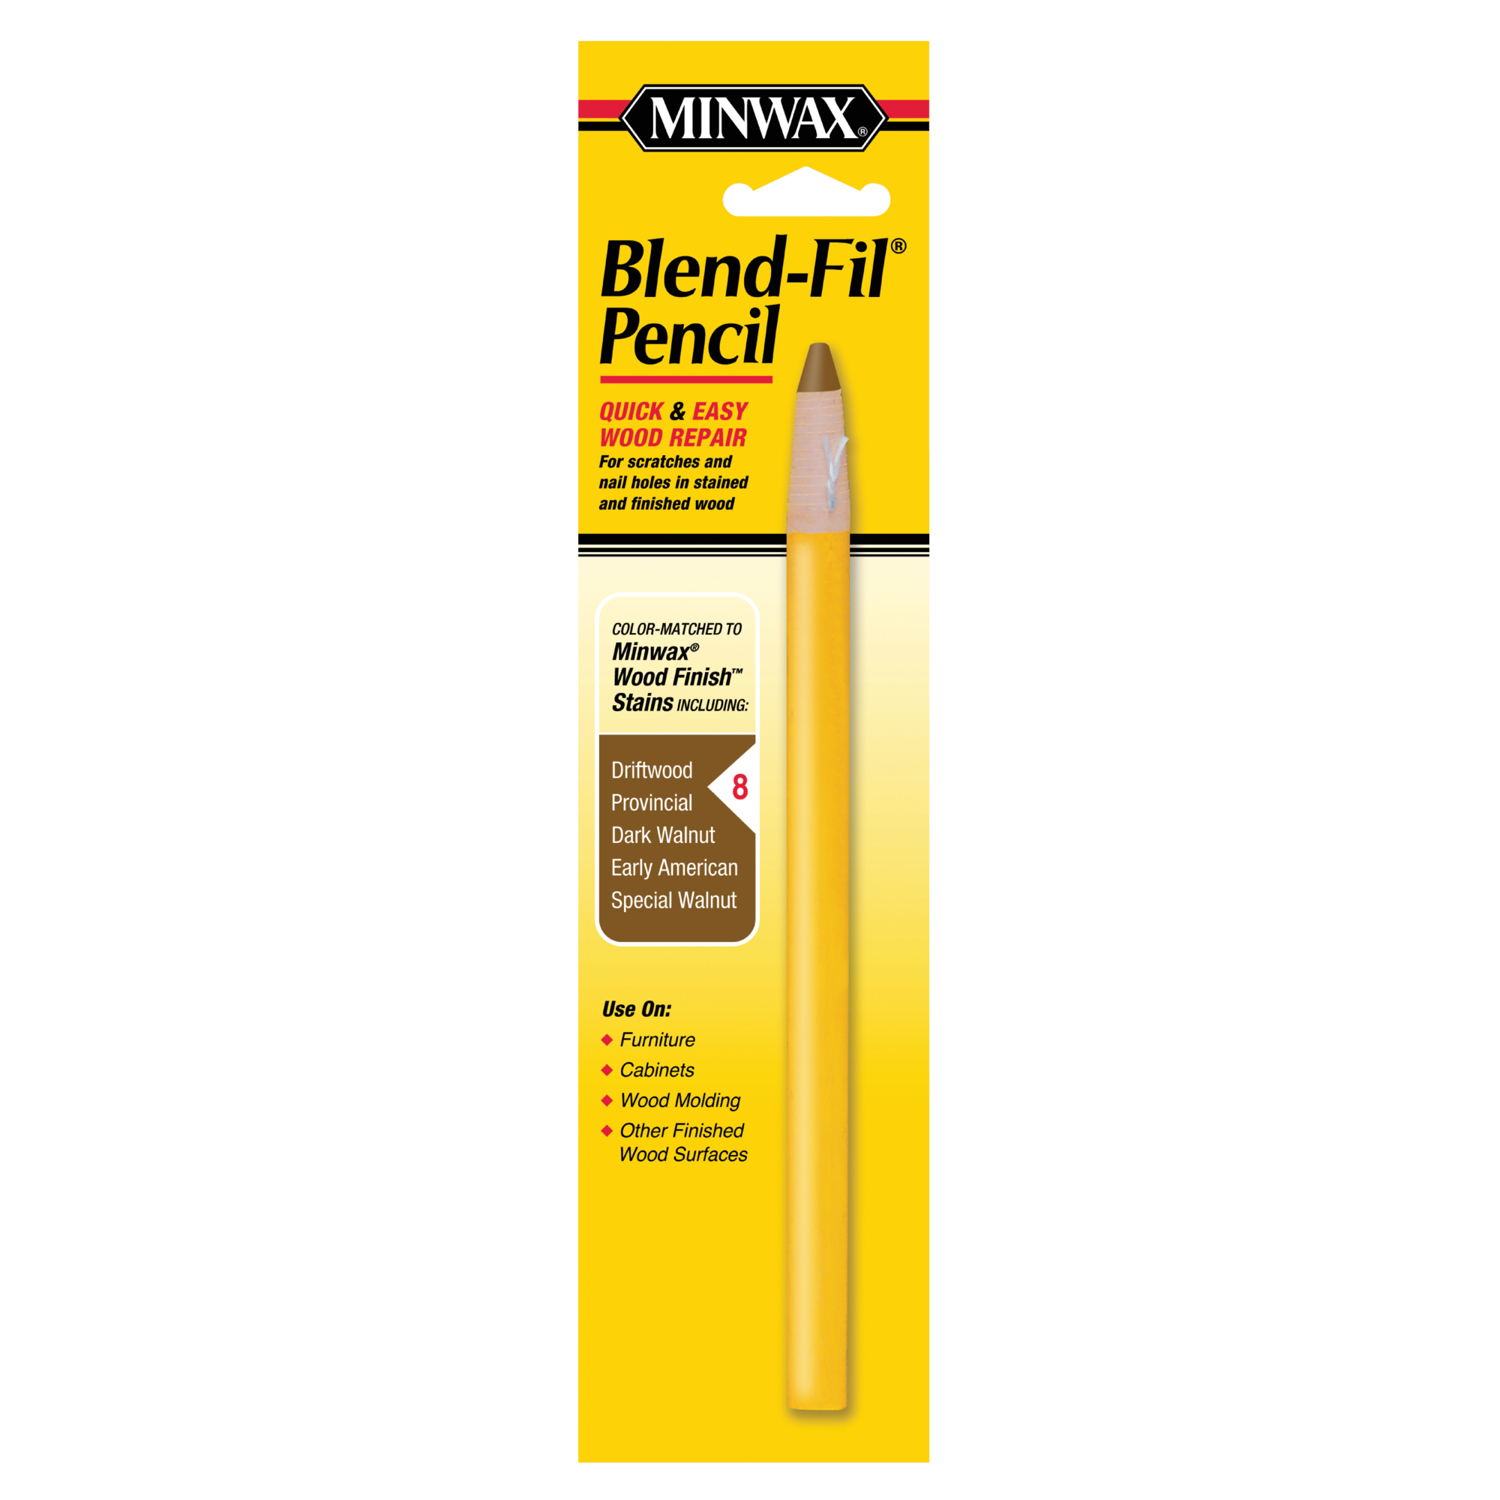 Minwax Blend-Fil No.8 Dark Walnut, Driftwood, Early American Wood Pencil 0.8 oz